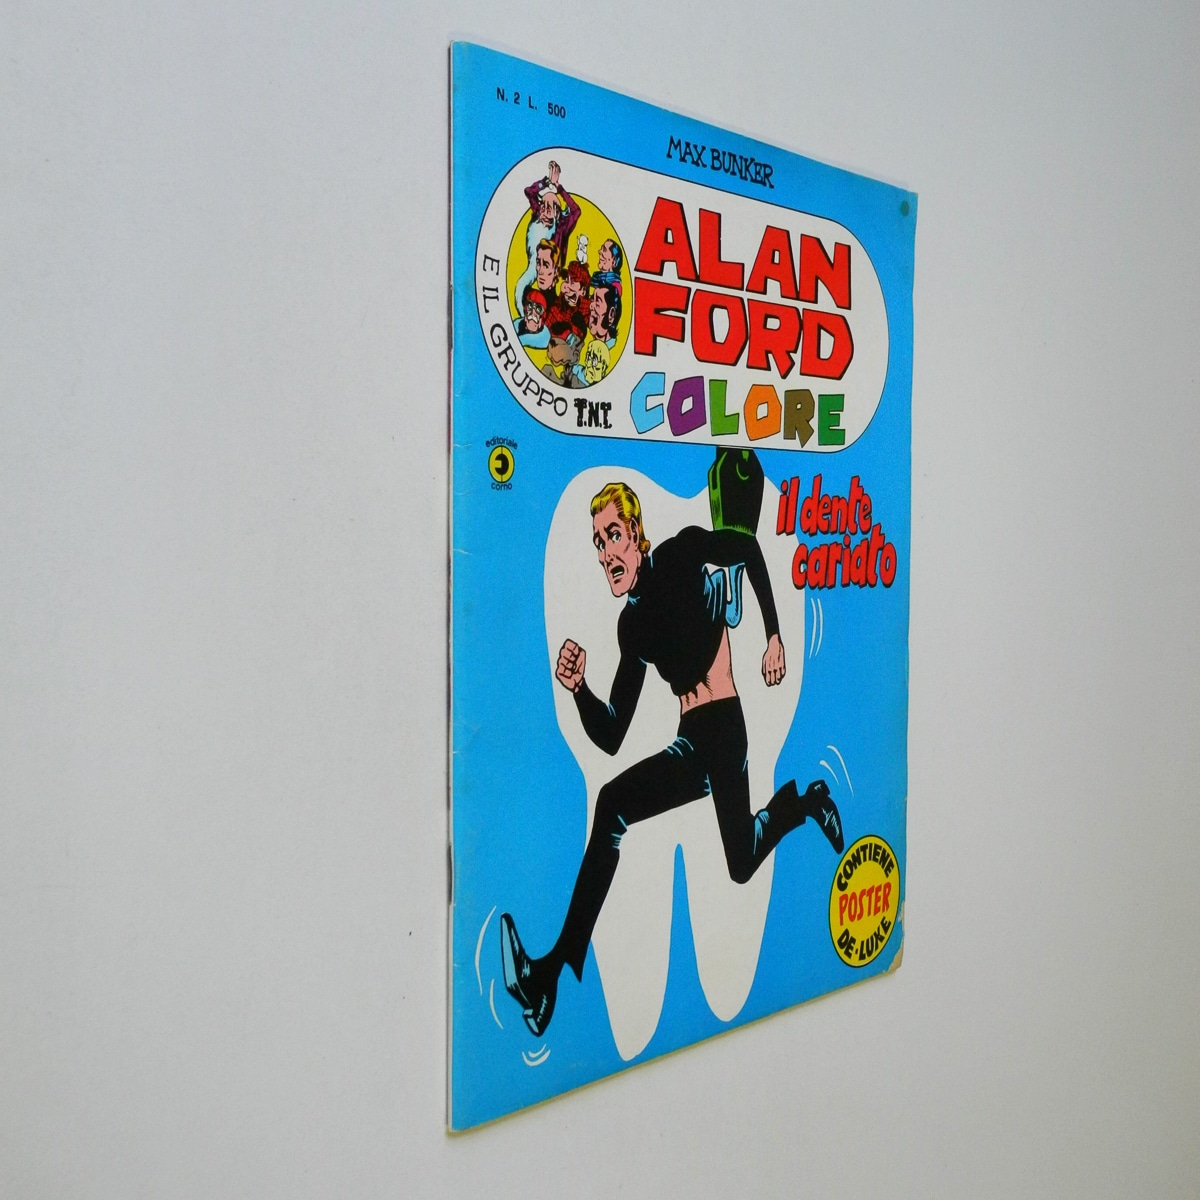 Alan Ford Colore n. 2 con Poster Il dente cariato